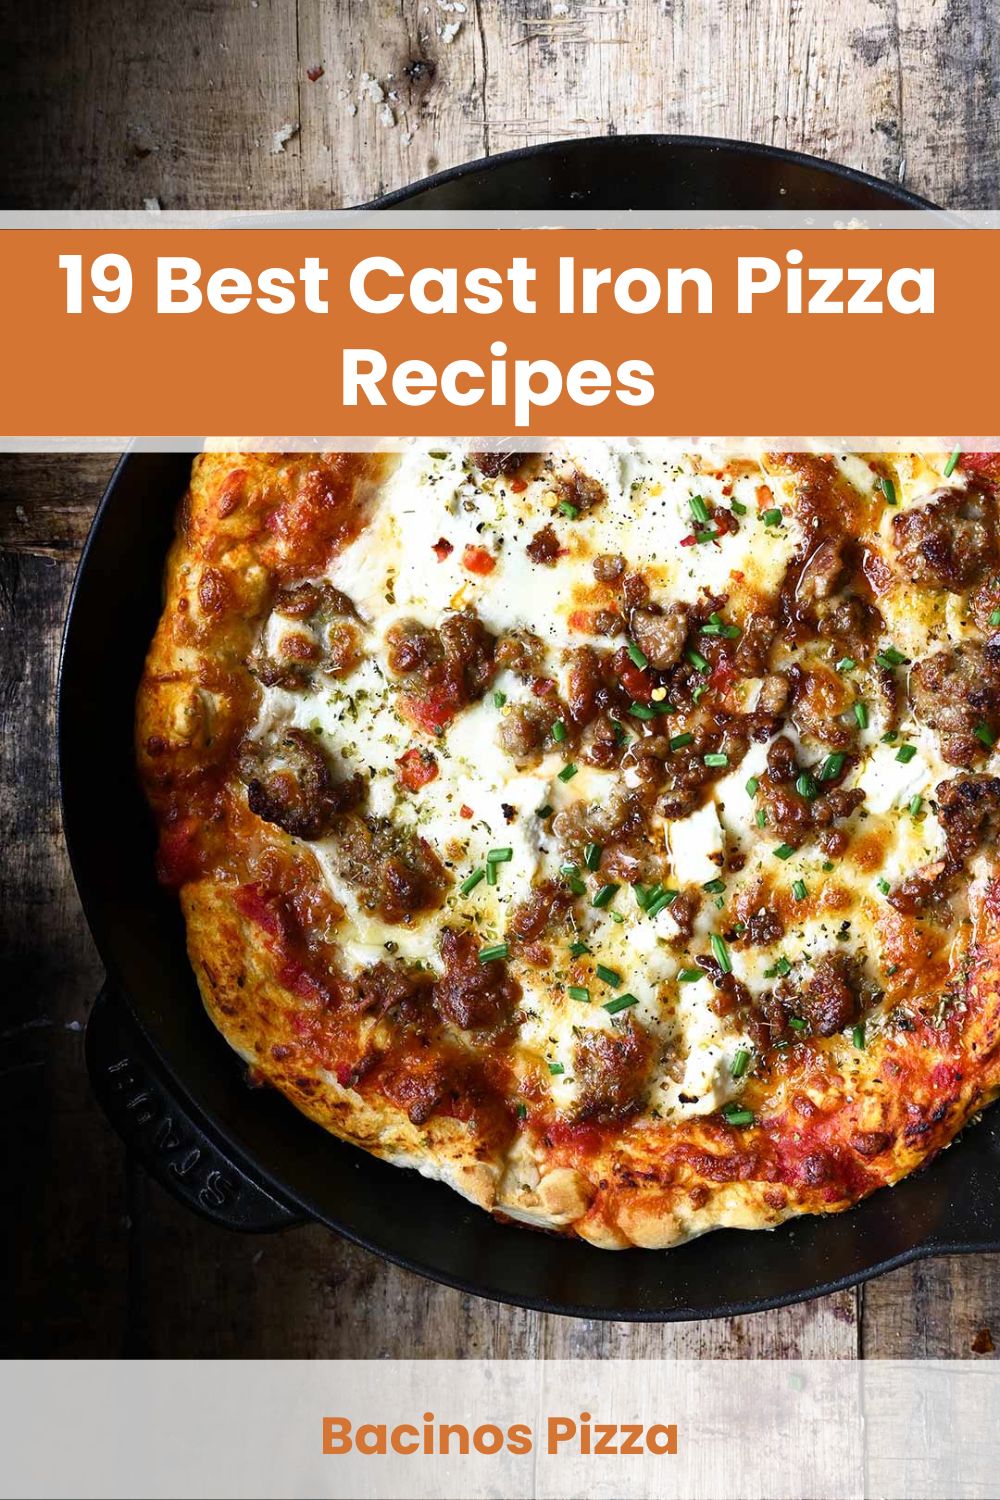 Cast Iron Pizza Recipe